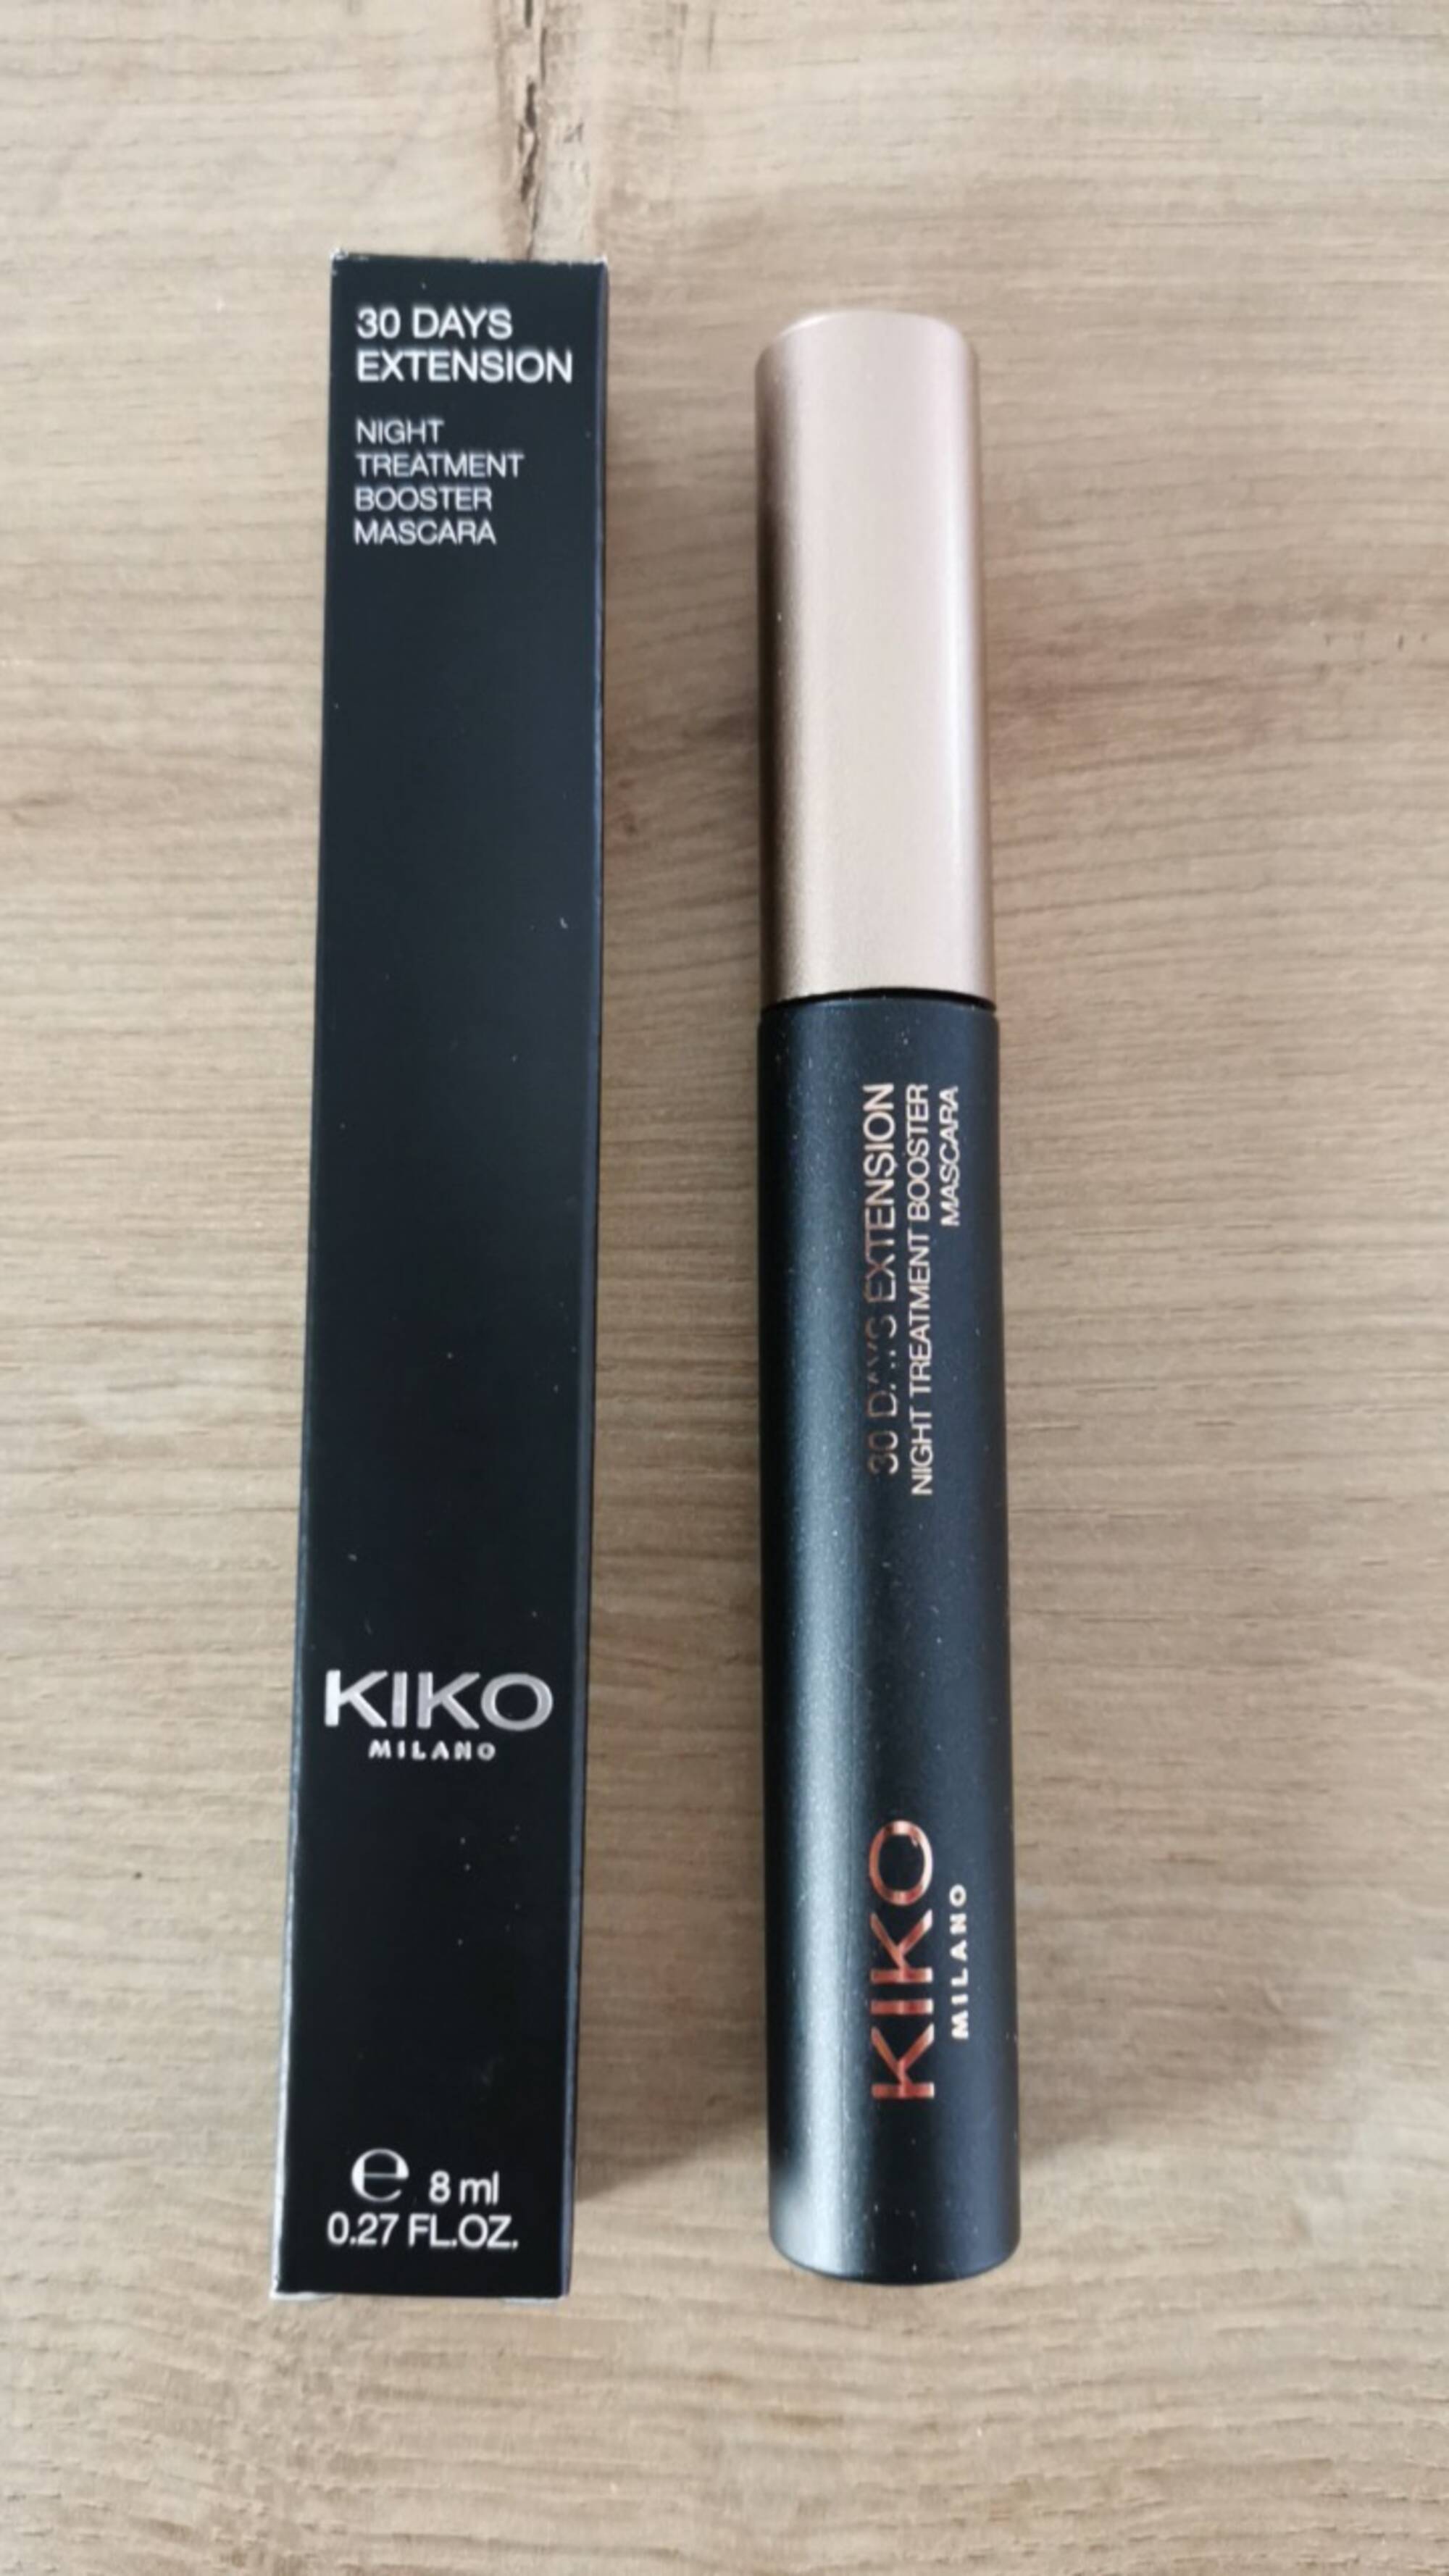 KIKO - 30 days extension - Night treatment Booster mascara